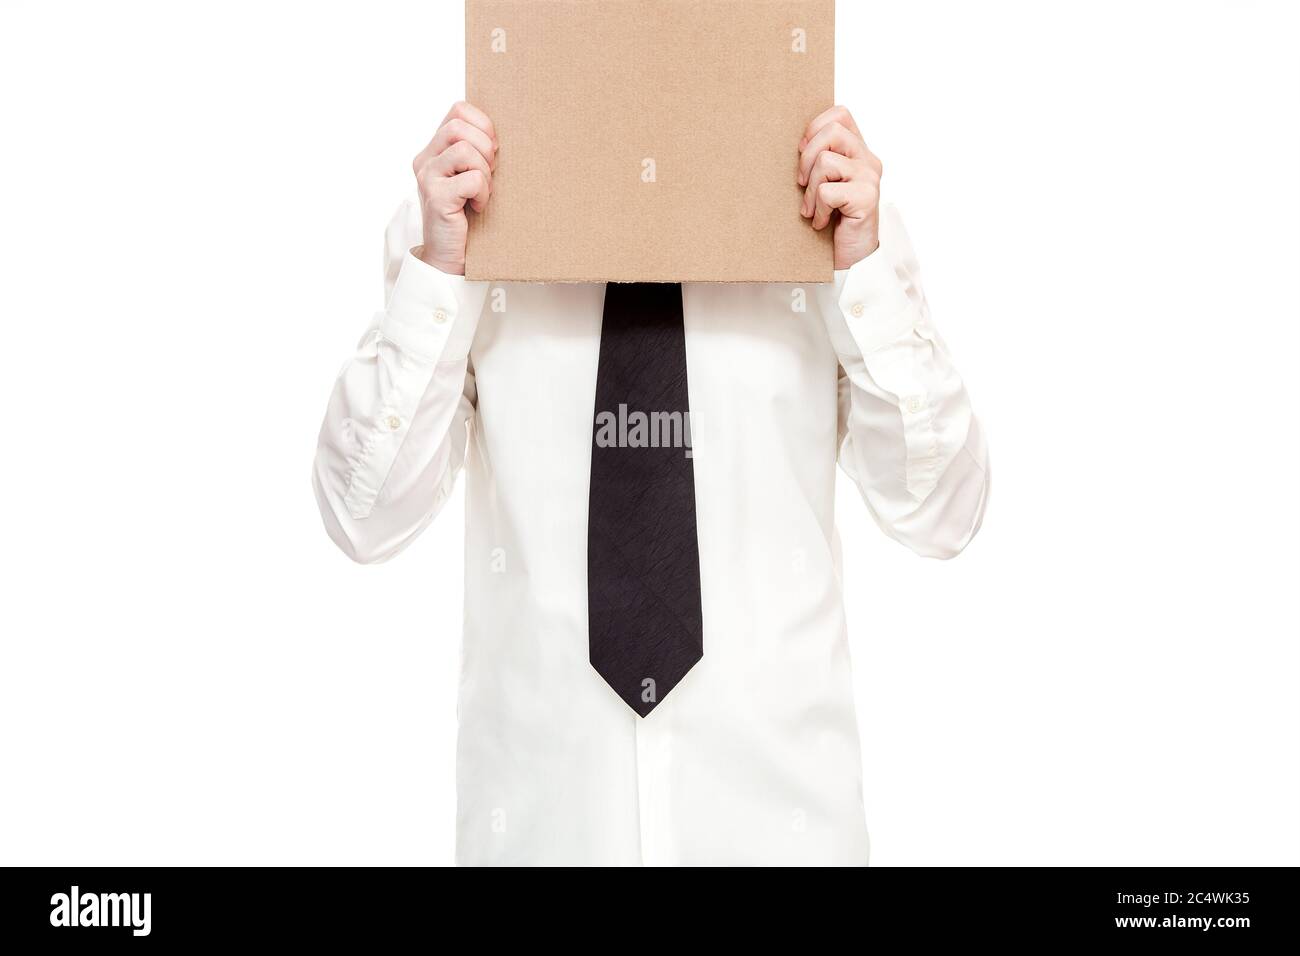 homme d'affaires en chemise avec cravate tient une affiche en carton dans  ses mains pour protester contre le chômage dû à la quarantaine, concept sur  le thème de l'inemploym Photo Stock -